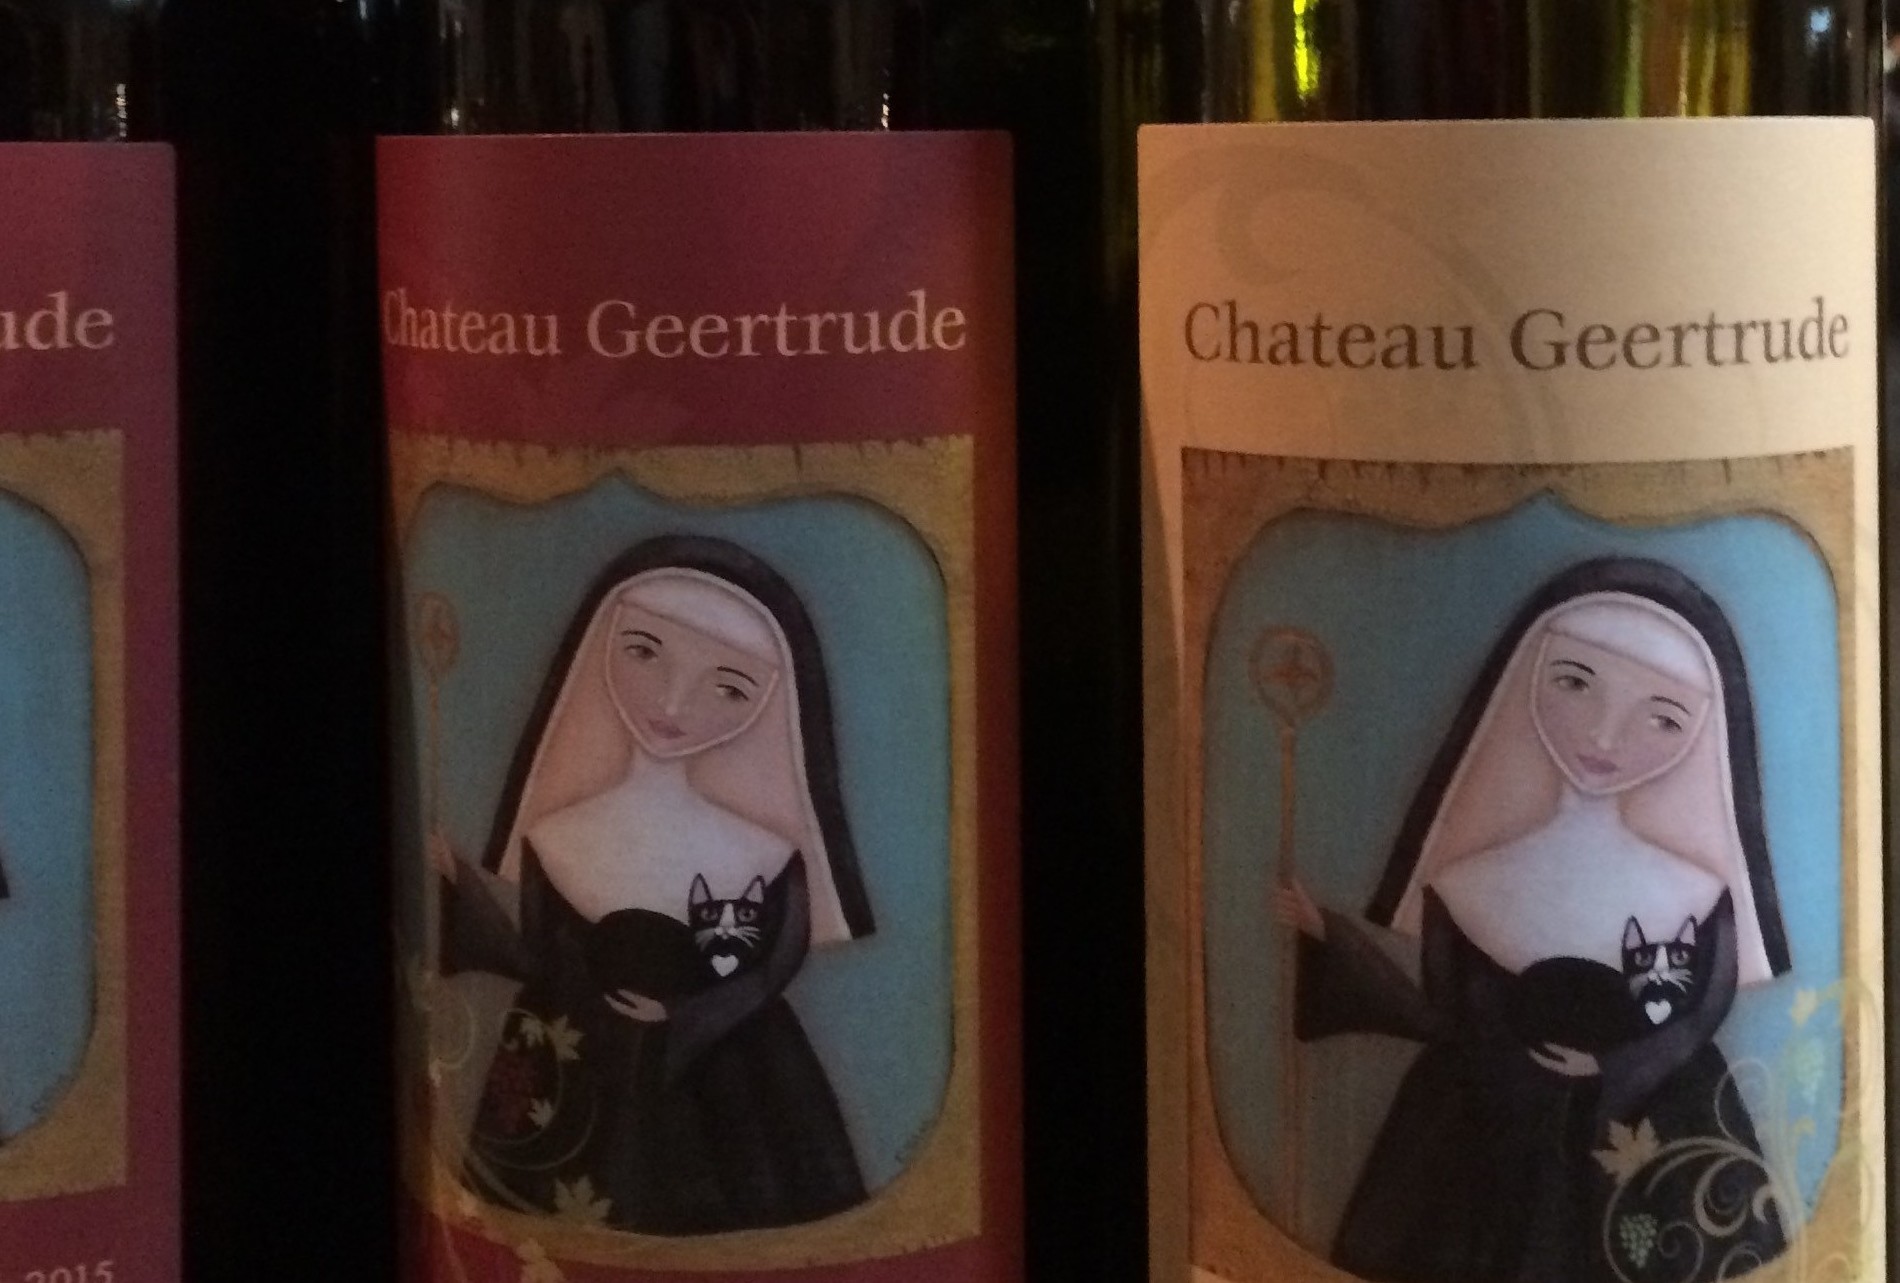 Verkoop van wijn ‘Chateau Geertrude’ en kaarsen